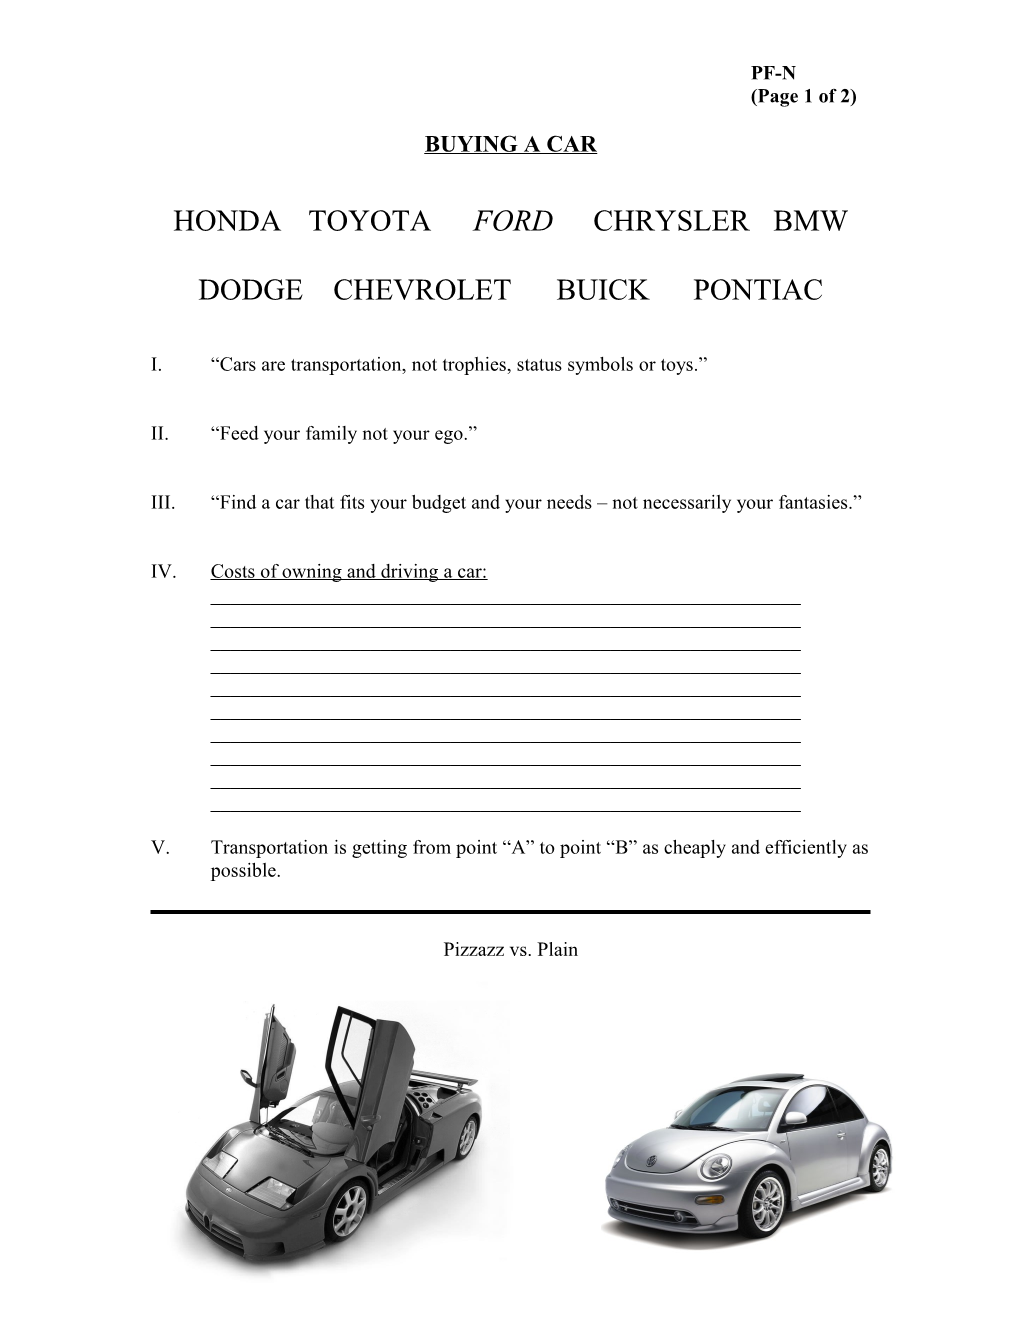 Honda Toyota Ford Chrysler Bmw